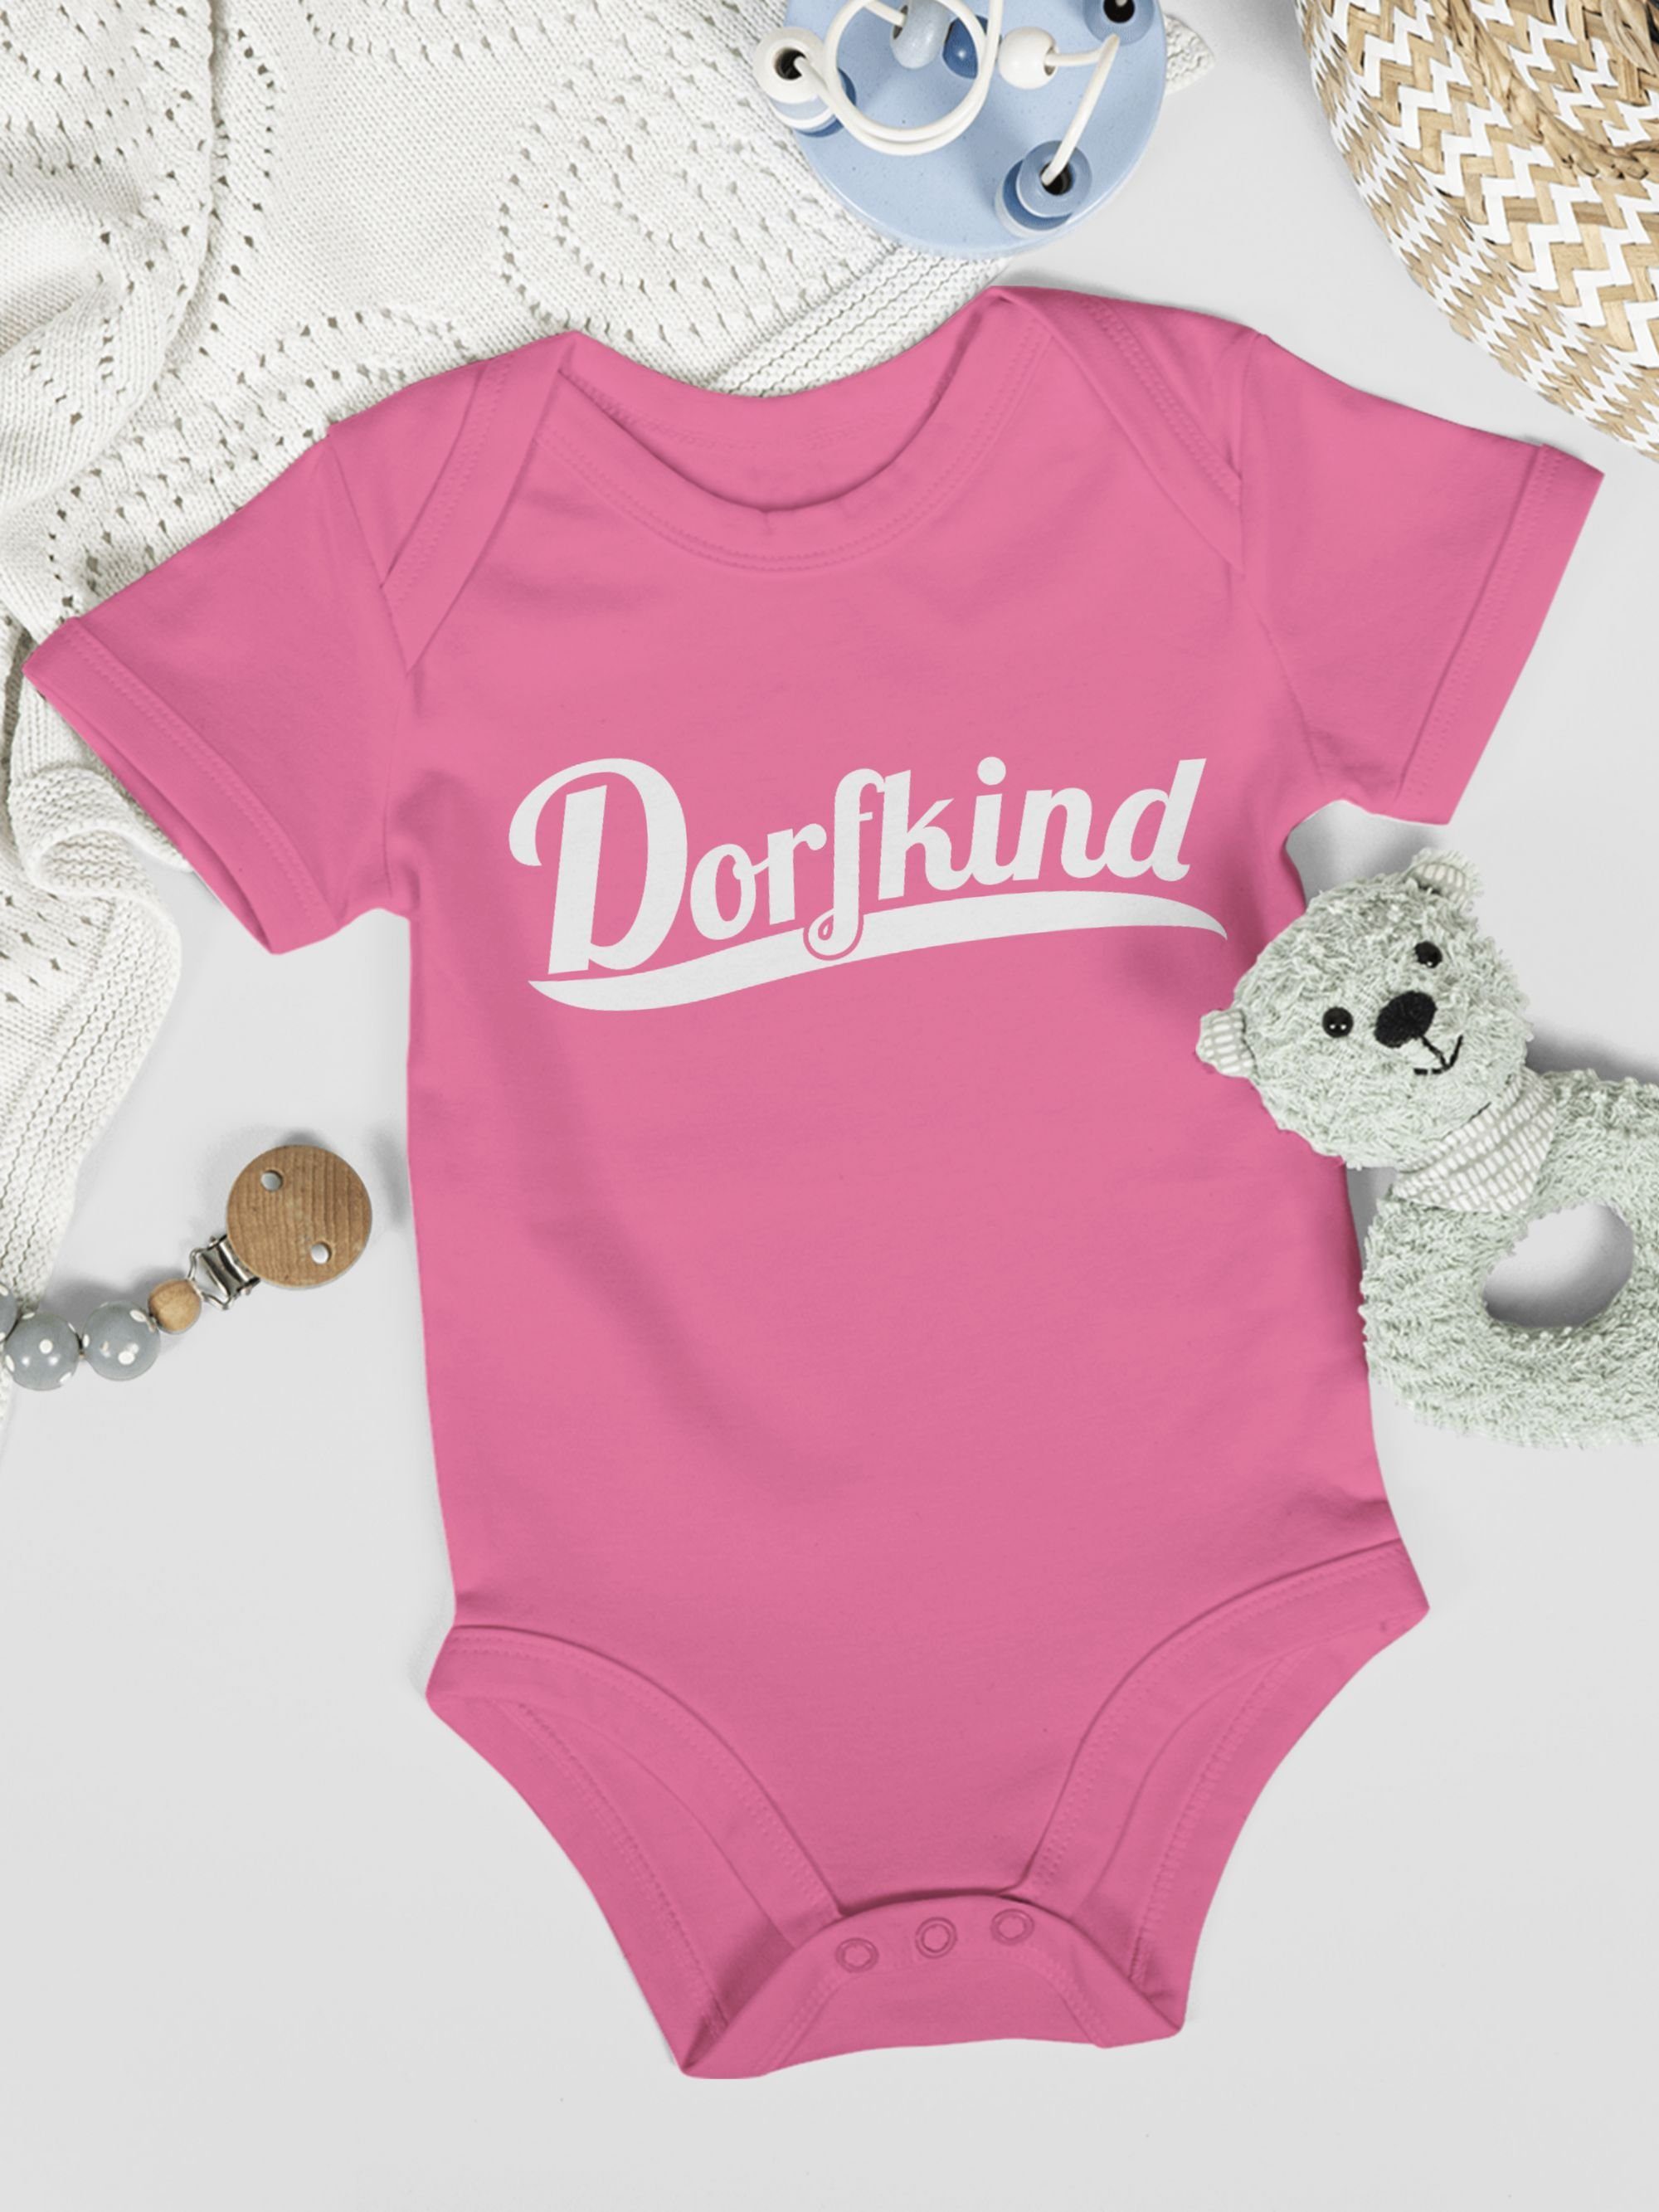 Sprüche Weiss Shirtracer Baby 2 Dorfkind Pink Shirtbody